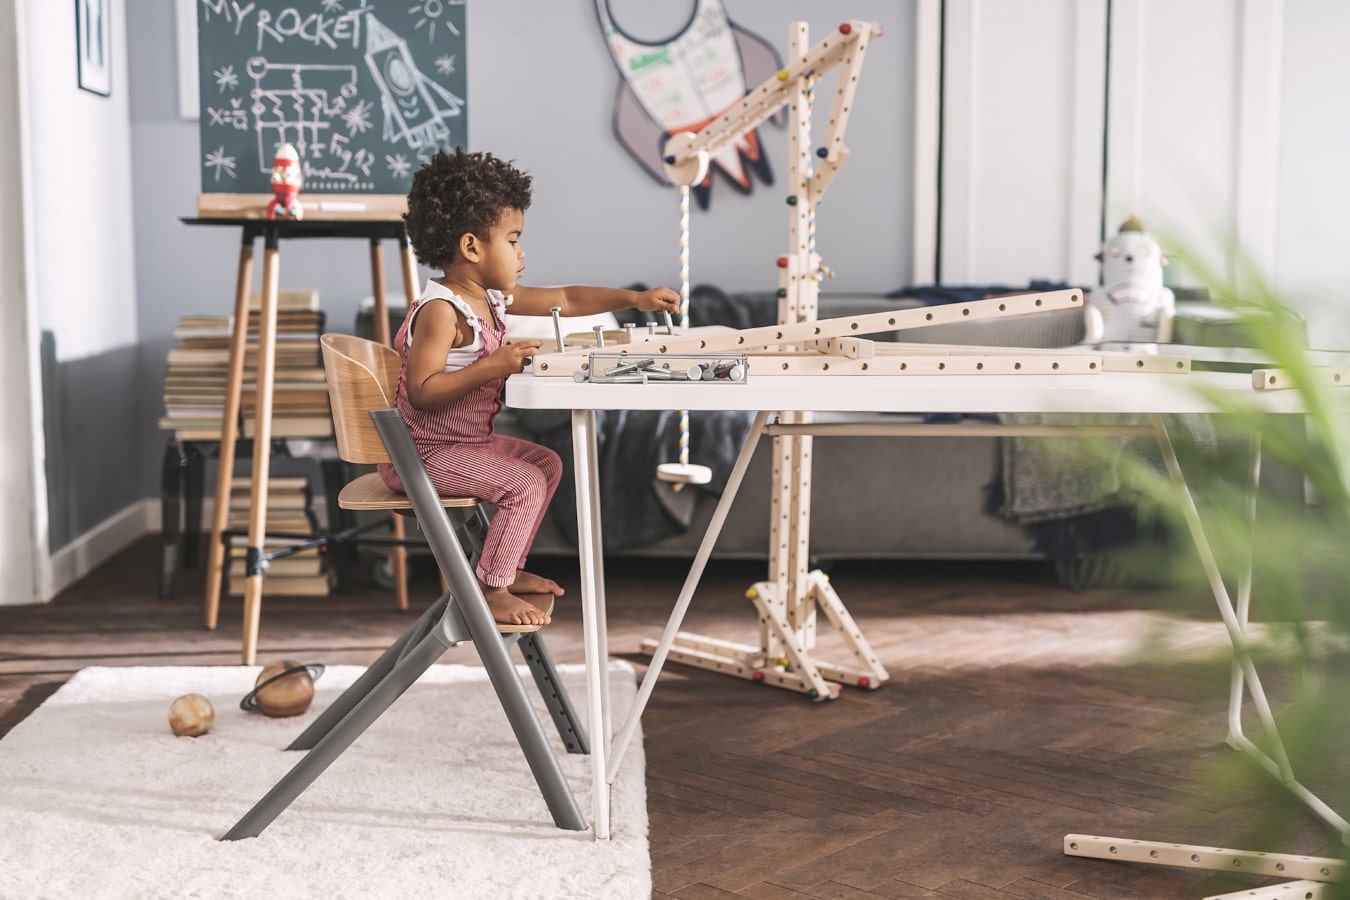 Un ragazzino con i capelli neri sta costruendo una struttura di legno, è molto concentrato, e sta seduto su una sedia LIVY Kinderkraft